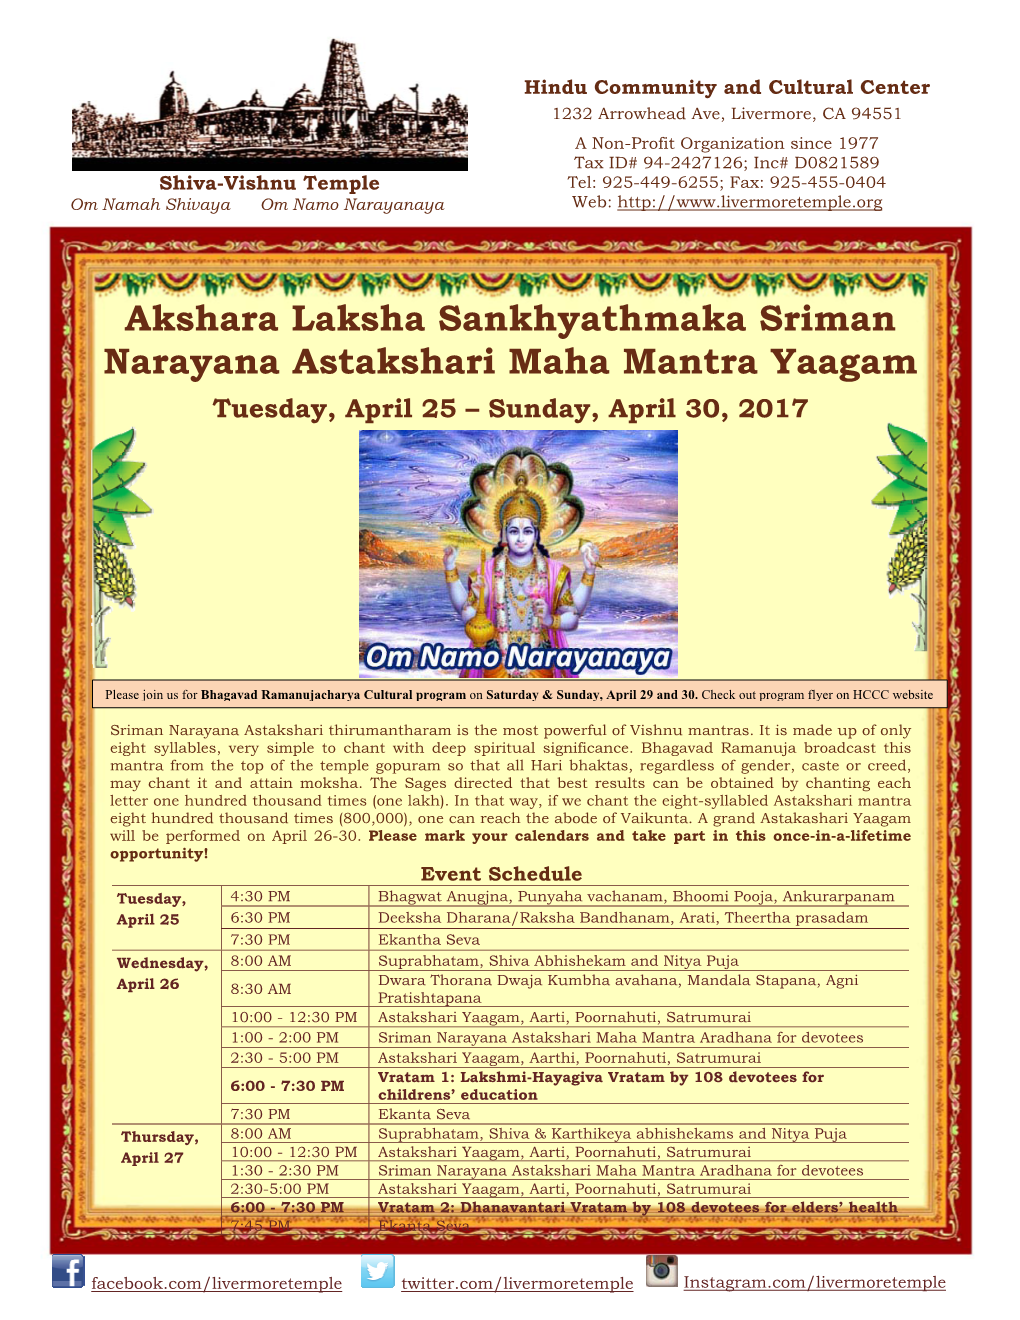 Akshara Laksha Sankhyathmaka Sriman Narayana Astakshari Maha Mantra Yaagam Tuesday, April 25 – Sunday, April 30, 2017